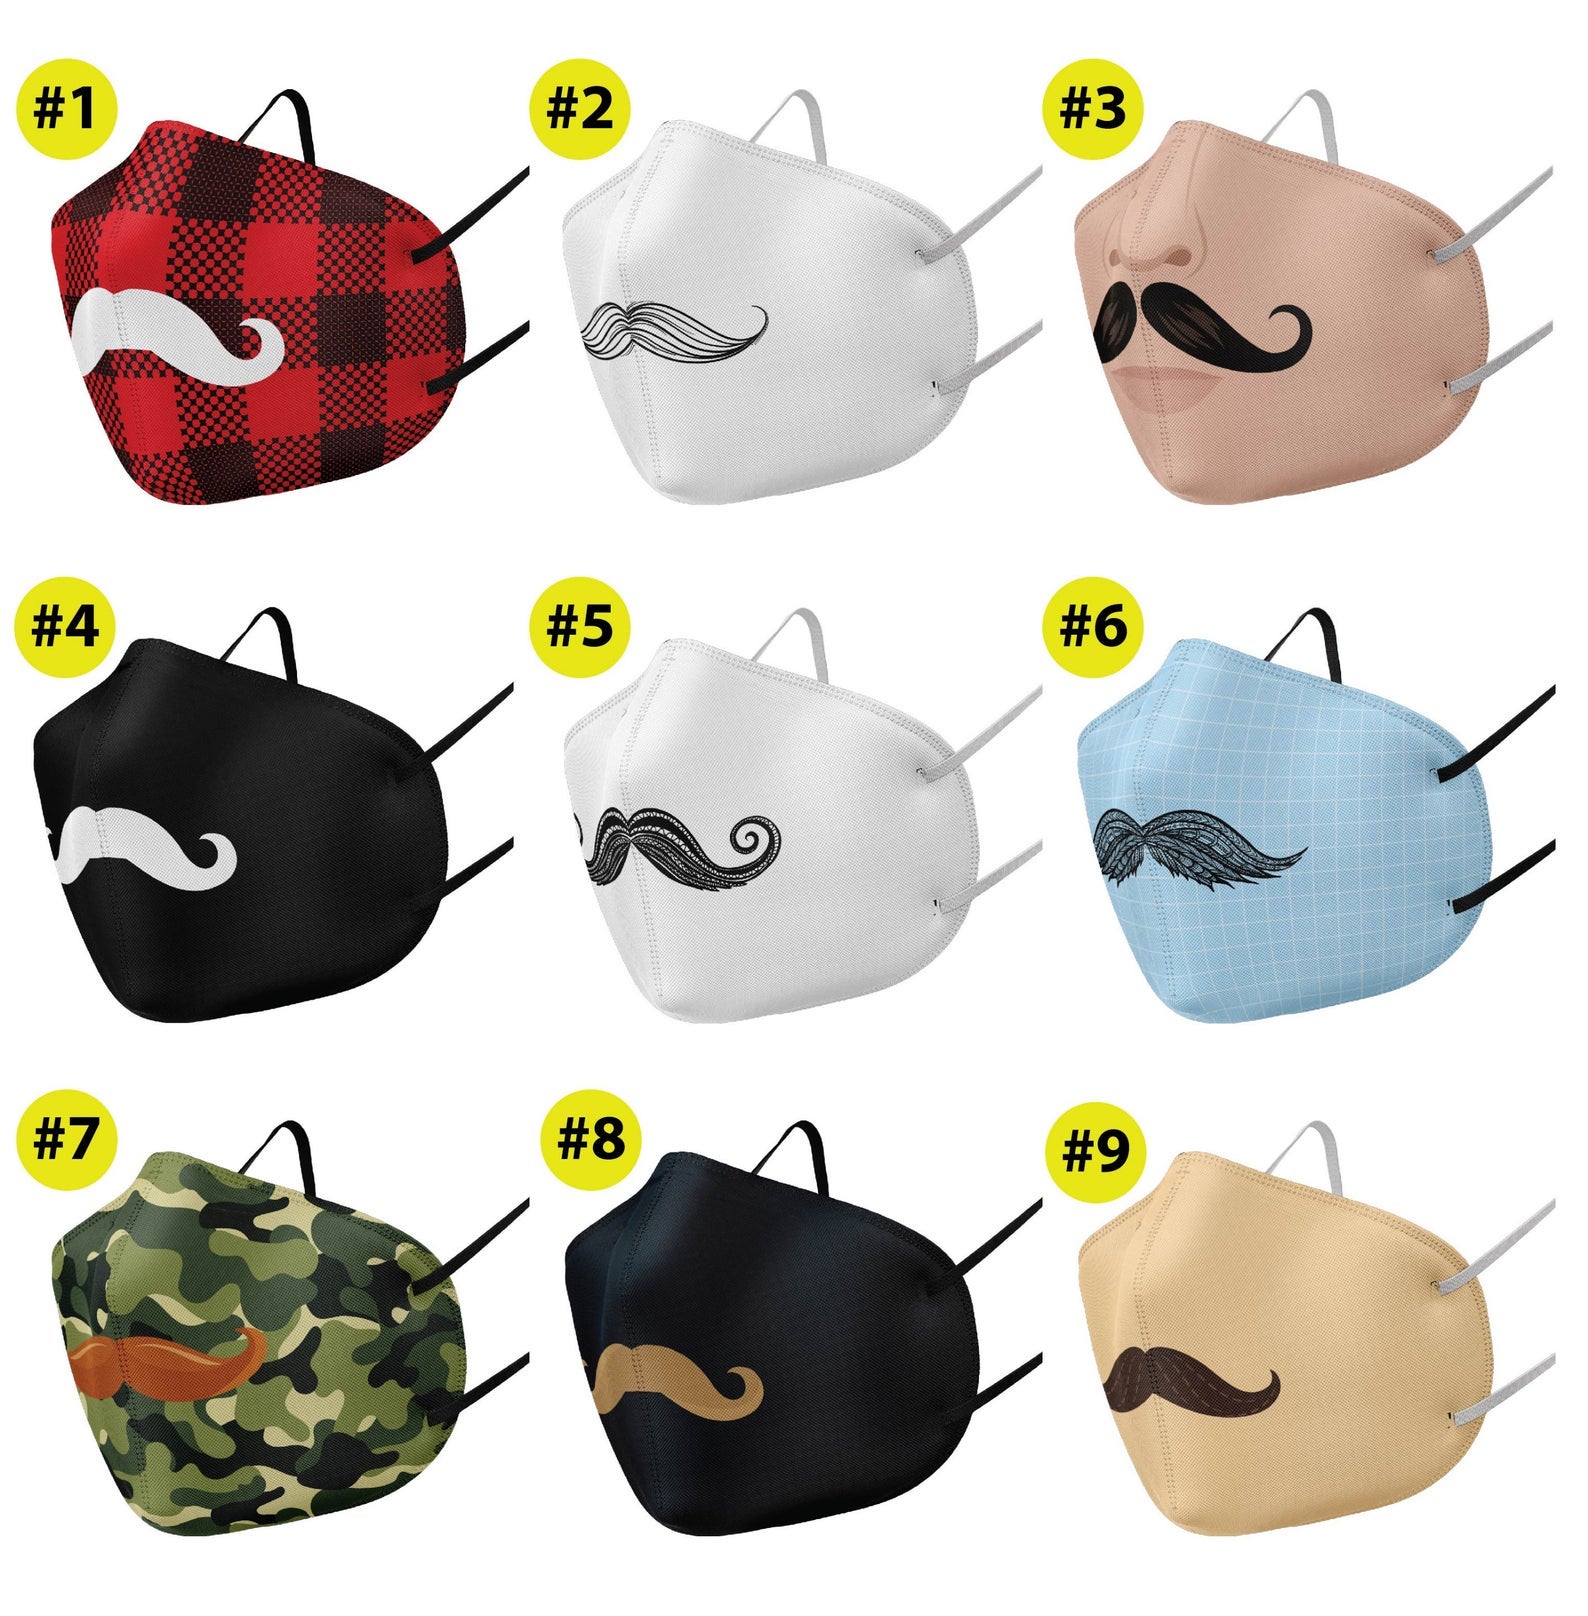 mustache masks.jpg